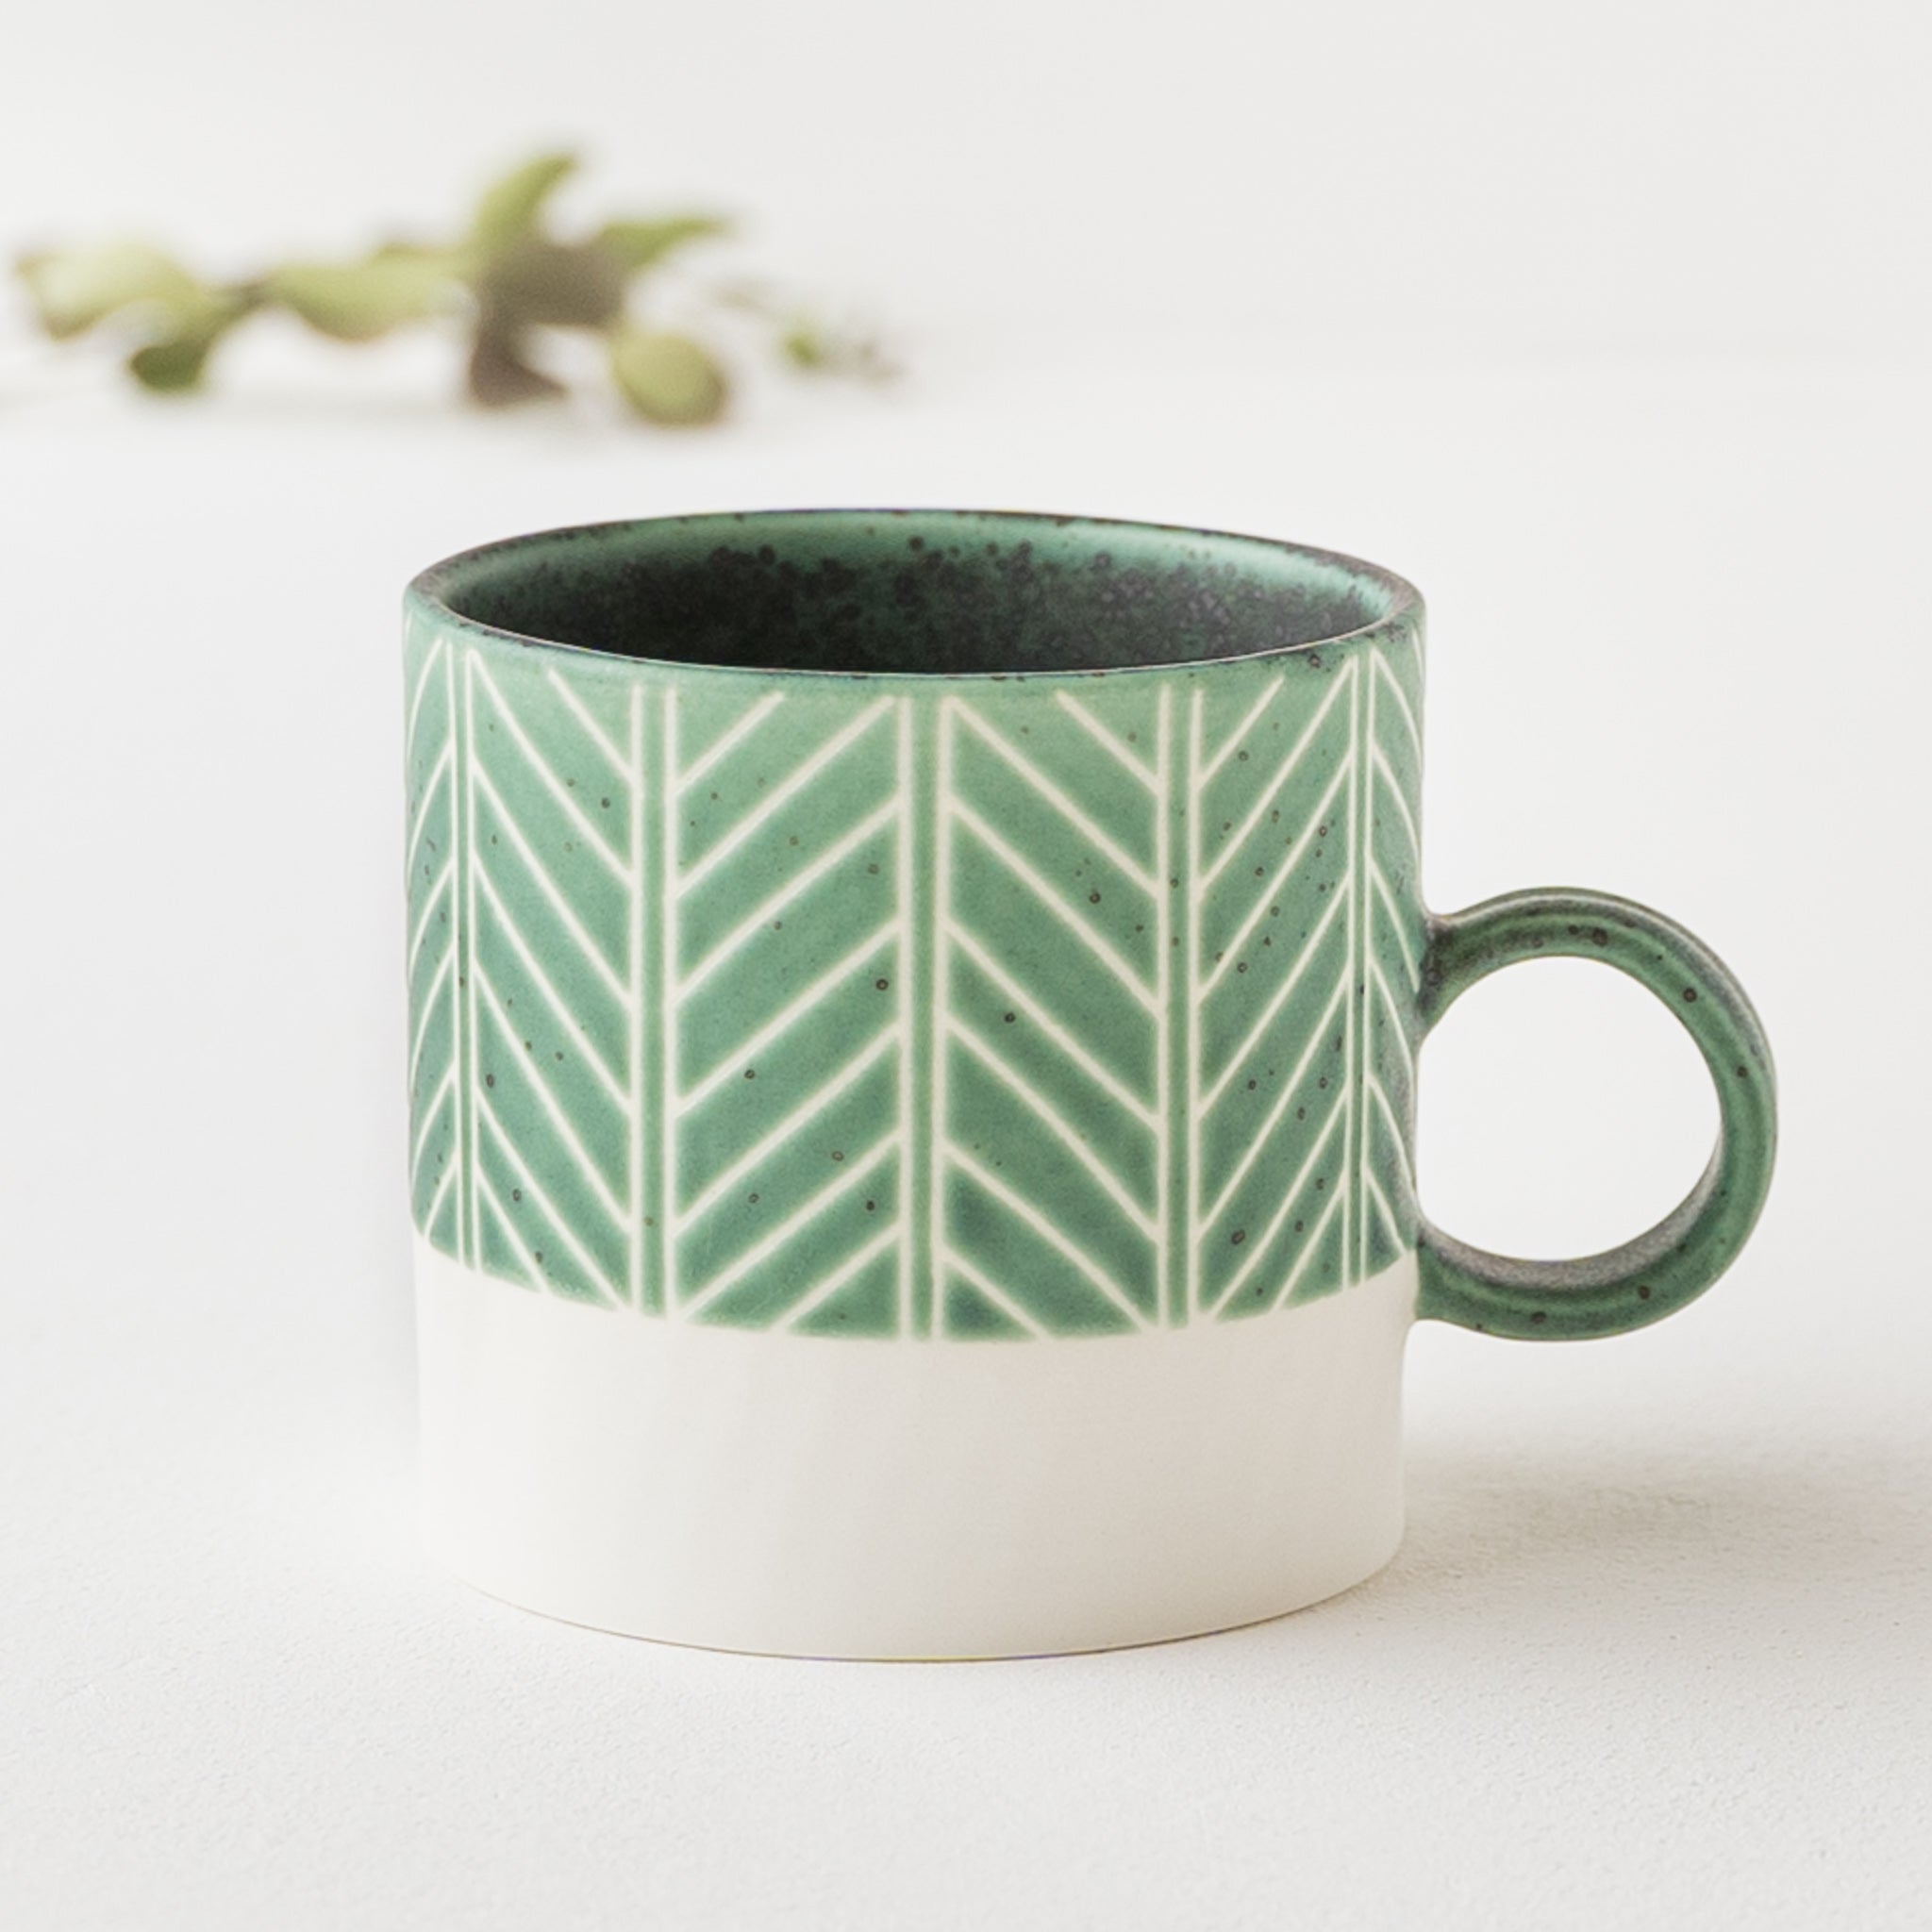 A stylish herringbone pattern mug by Yukari Nakagawa